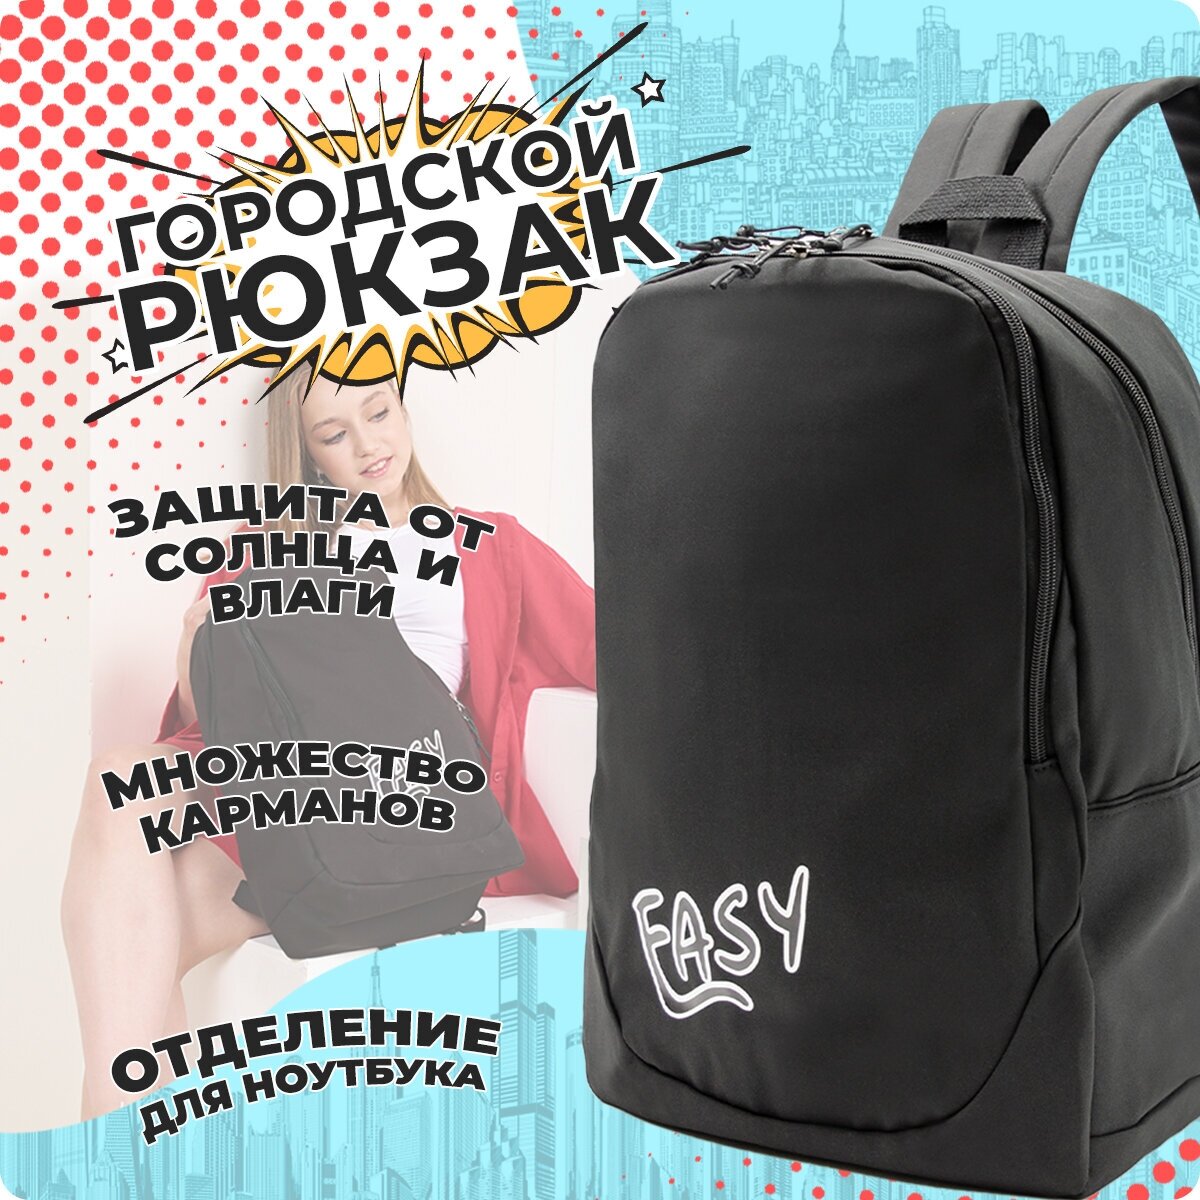 Рюкзак (черный) Just for fun мужской женский городской спортивный школьный повседневный офис для ноутбука туристический походный сумка ранец